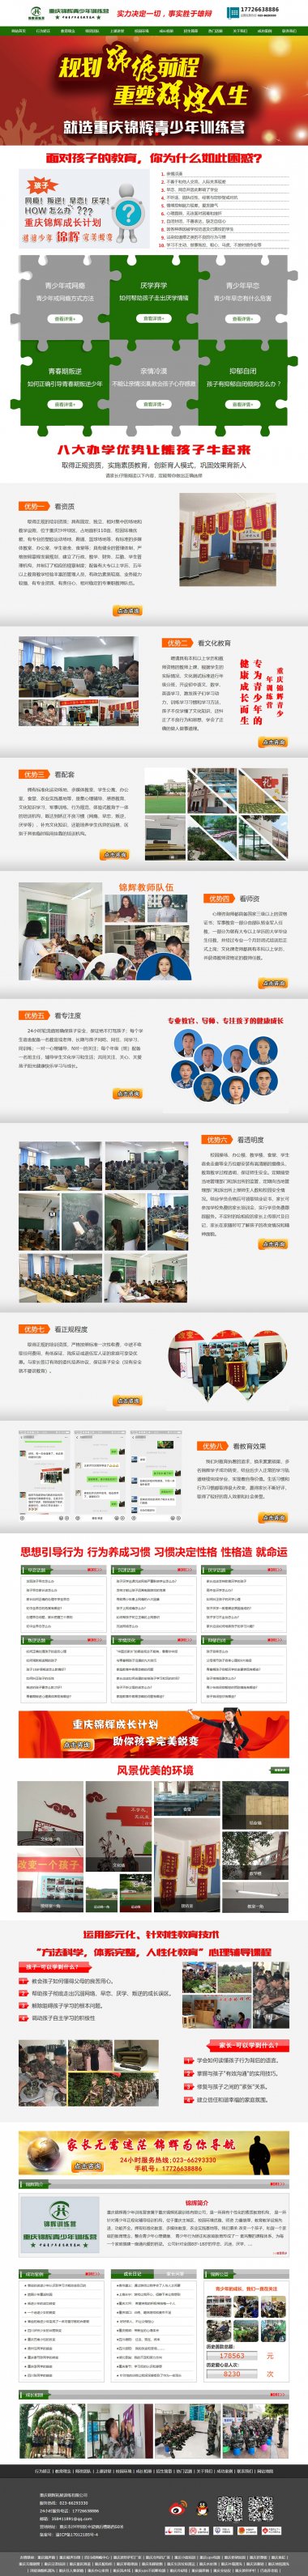  重庆锦辉青少年训练营网站建设案例